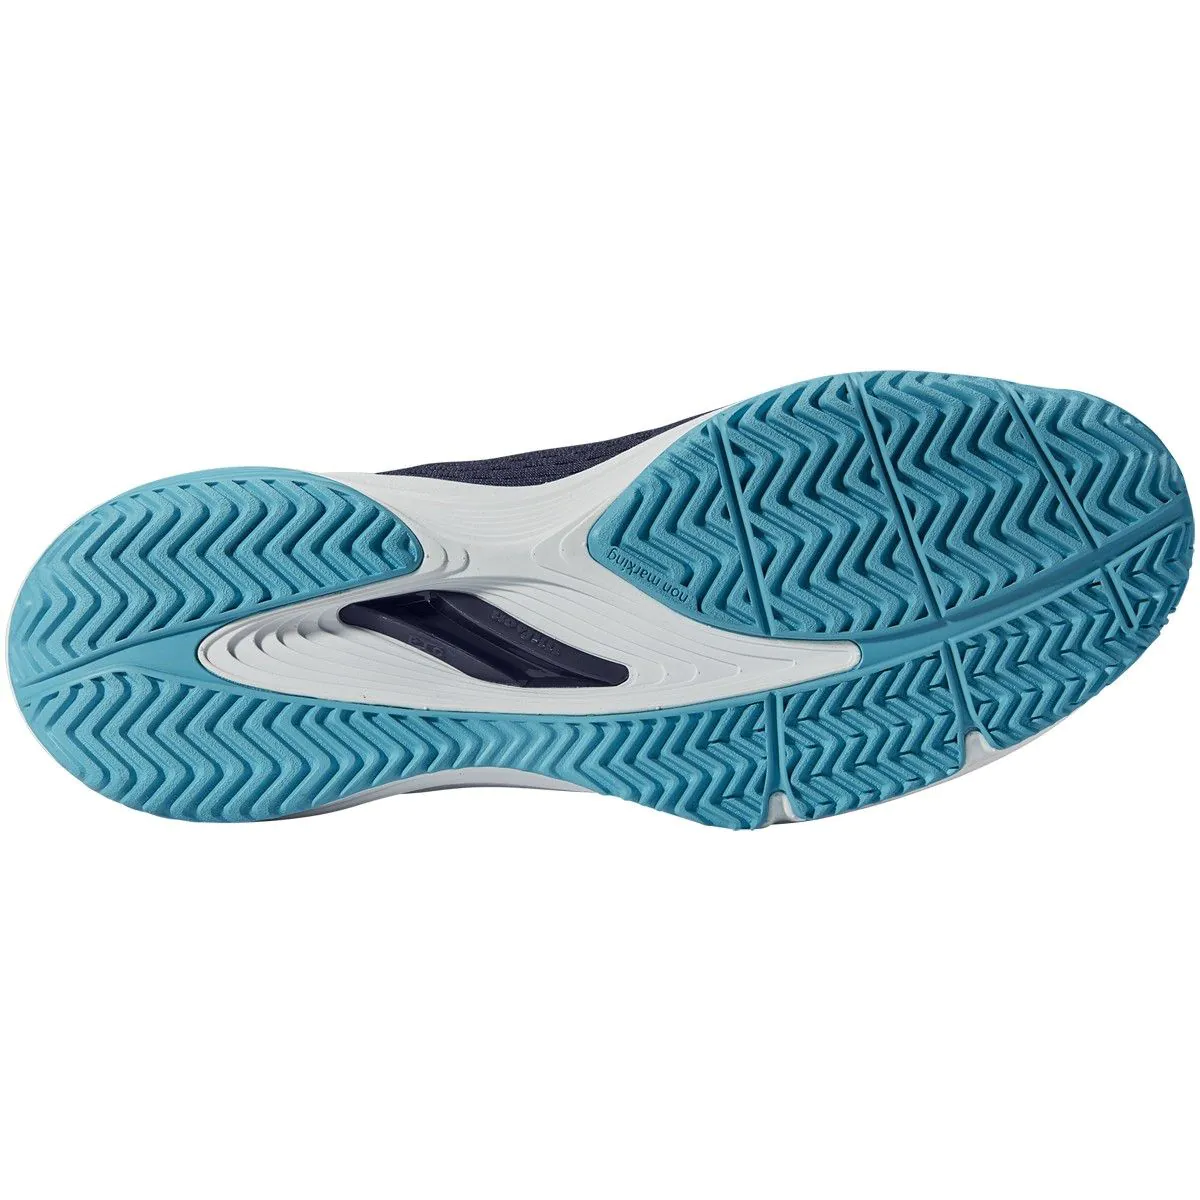 Wilson KAOS 3.0 Men's Tennis Shoes Blue Racket Racquet for All Court WRS325920 